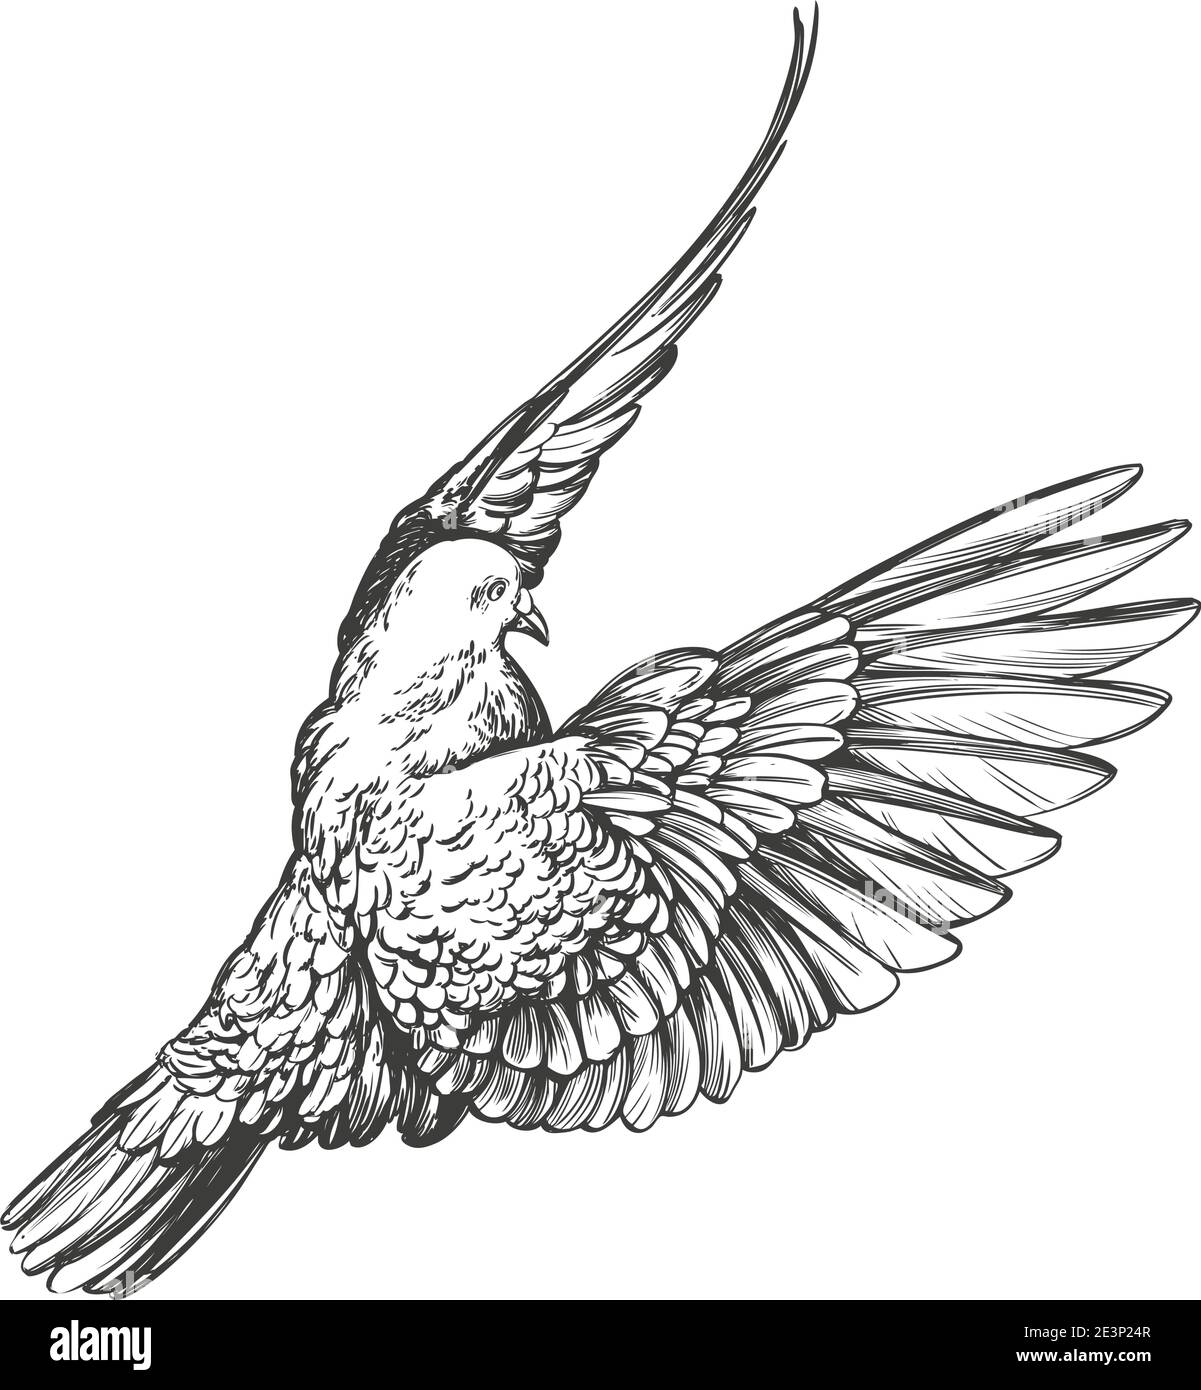 l'oiseau colombe est un symbole de paix et de pureté dessin à la main illustration vectorielle esquisse réaliste. Illustration de Vecteur